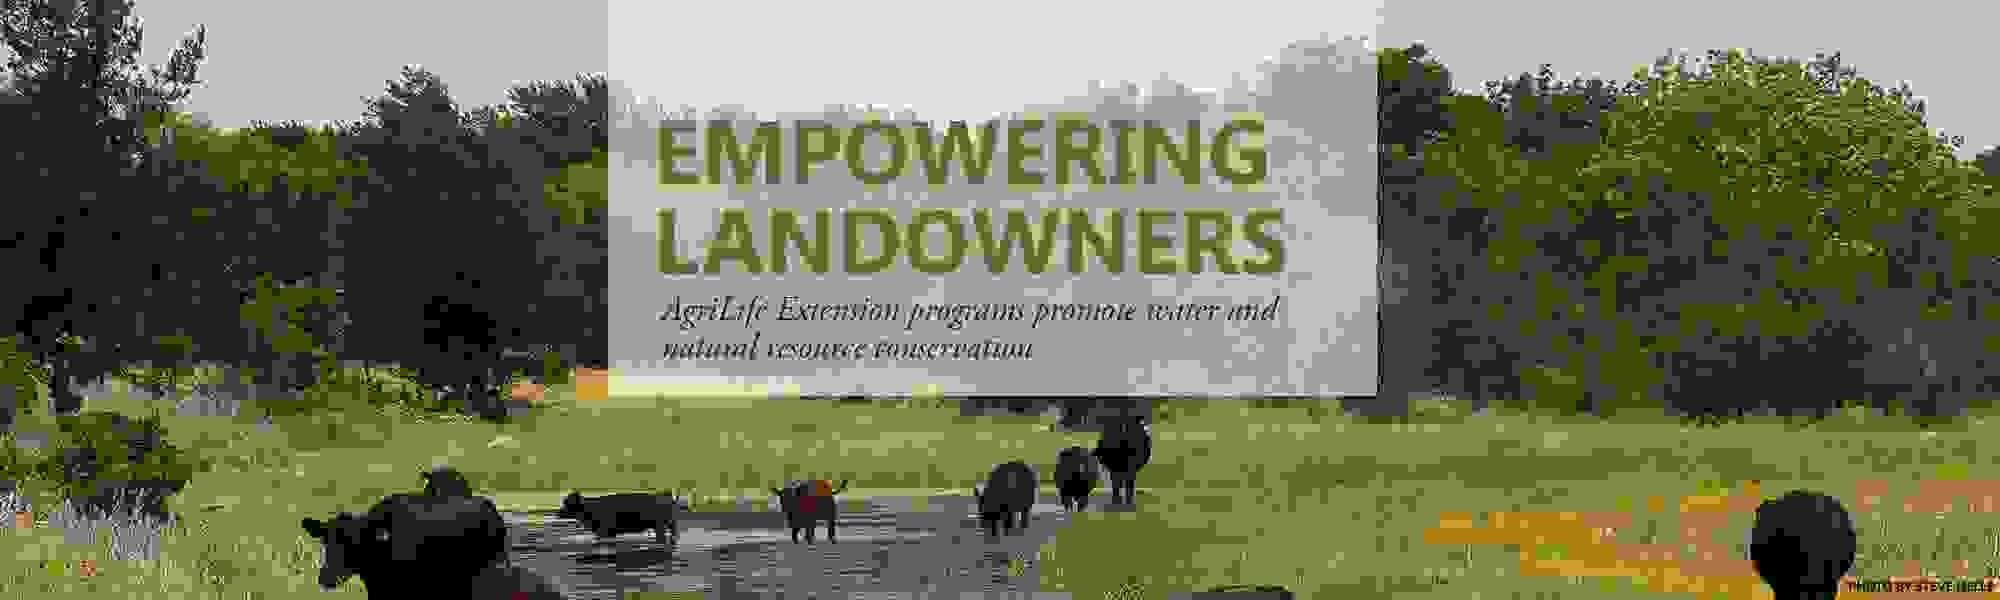 Empowering landowners